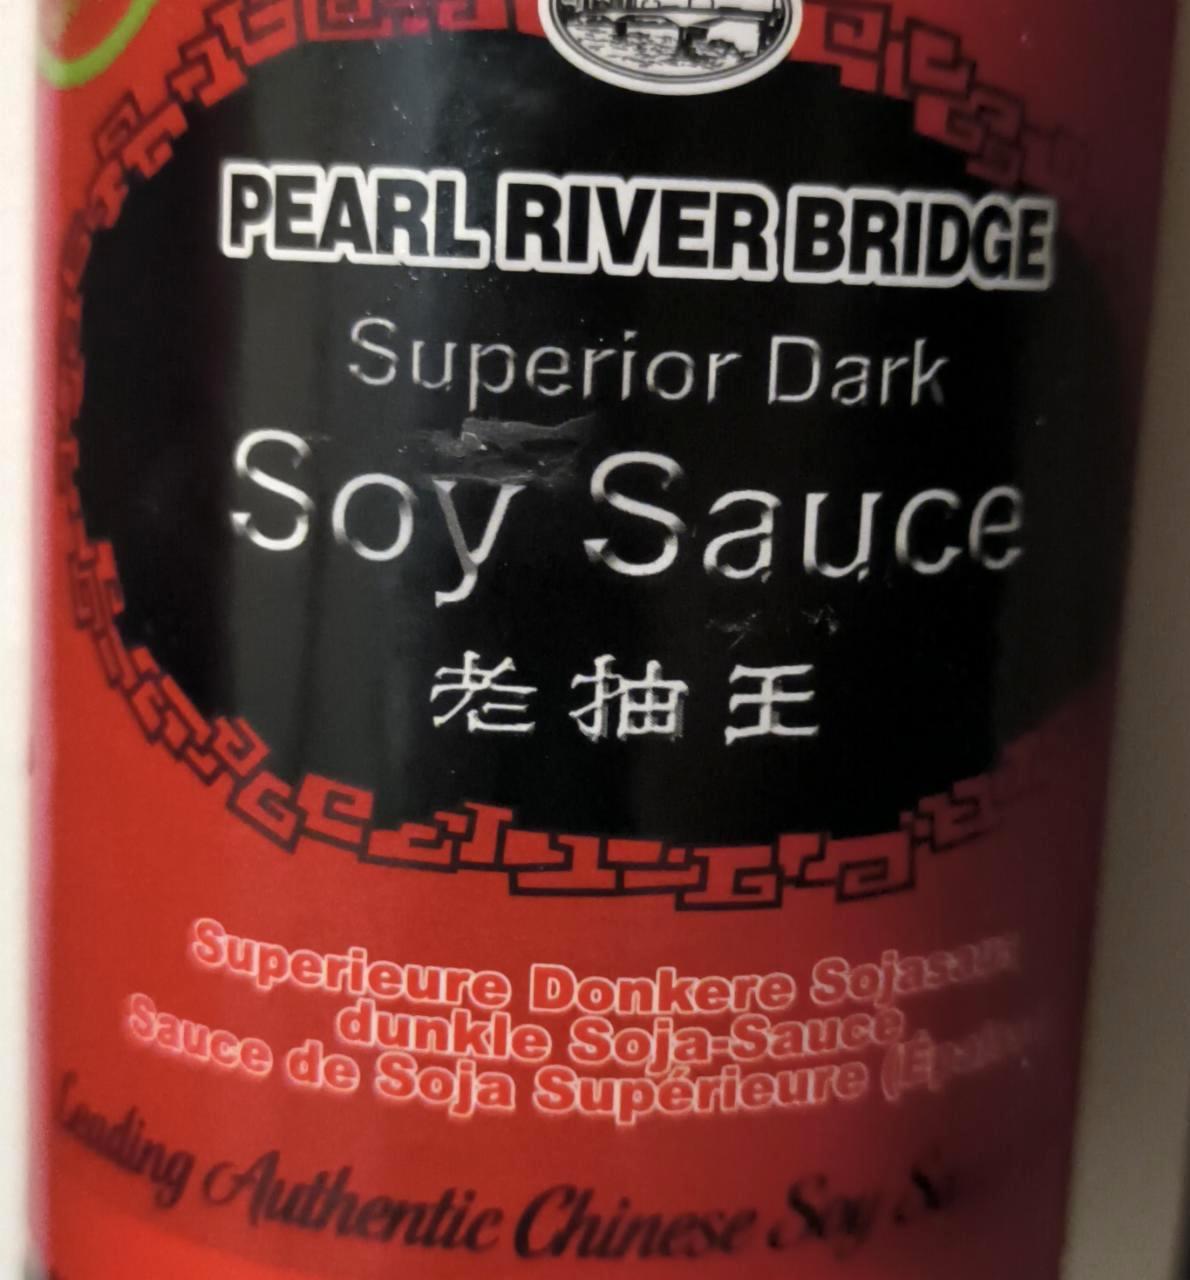 Képek - Soy sauce Pearl river bridge